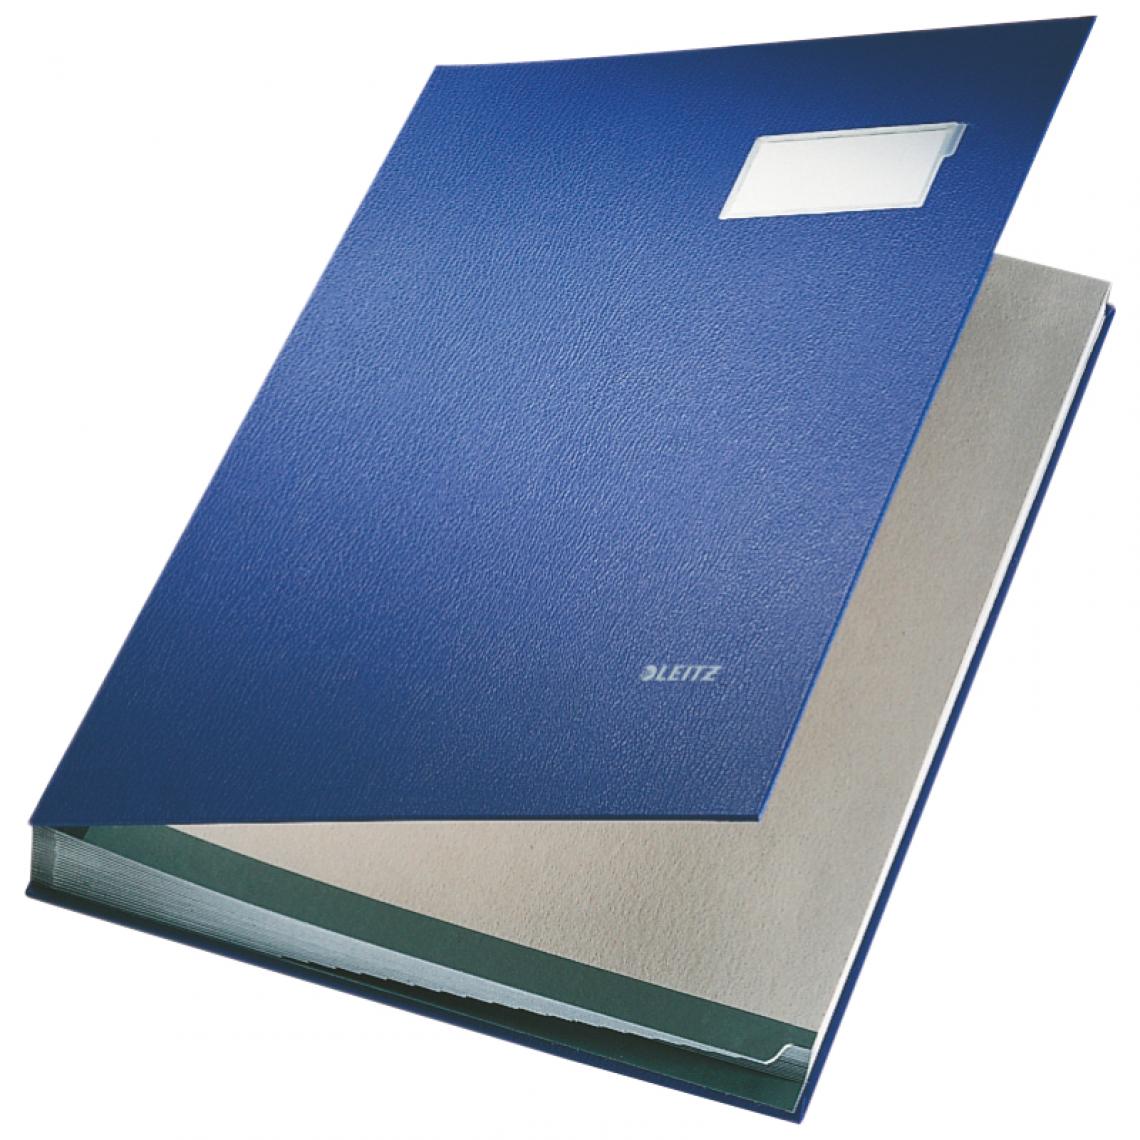 Leitz - LEITZ parapheur, revêtement en PP, 20 compartiments, bleu, () - Accessoires Bureau